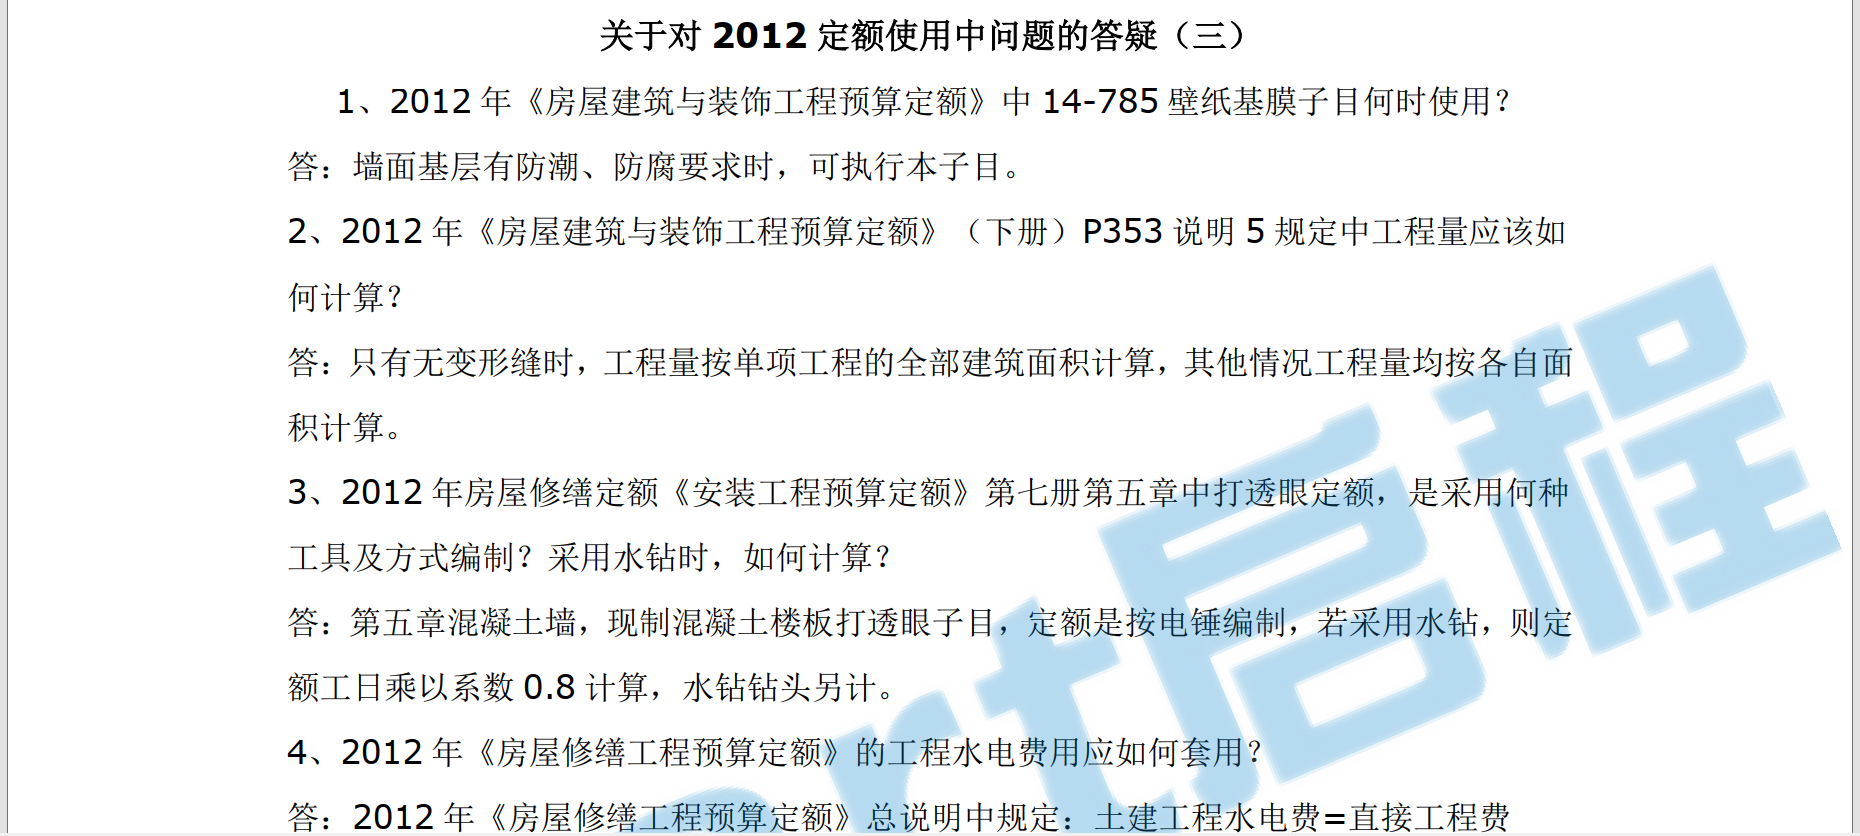 关于对2012北京定额使用中问题的答疑